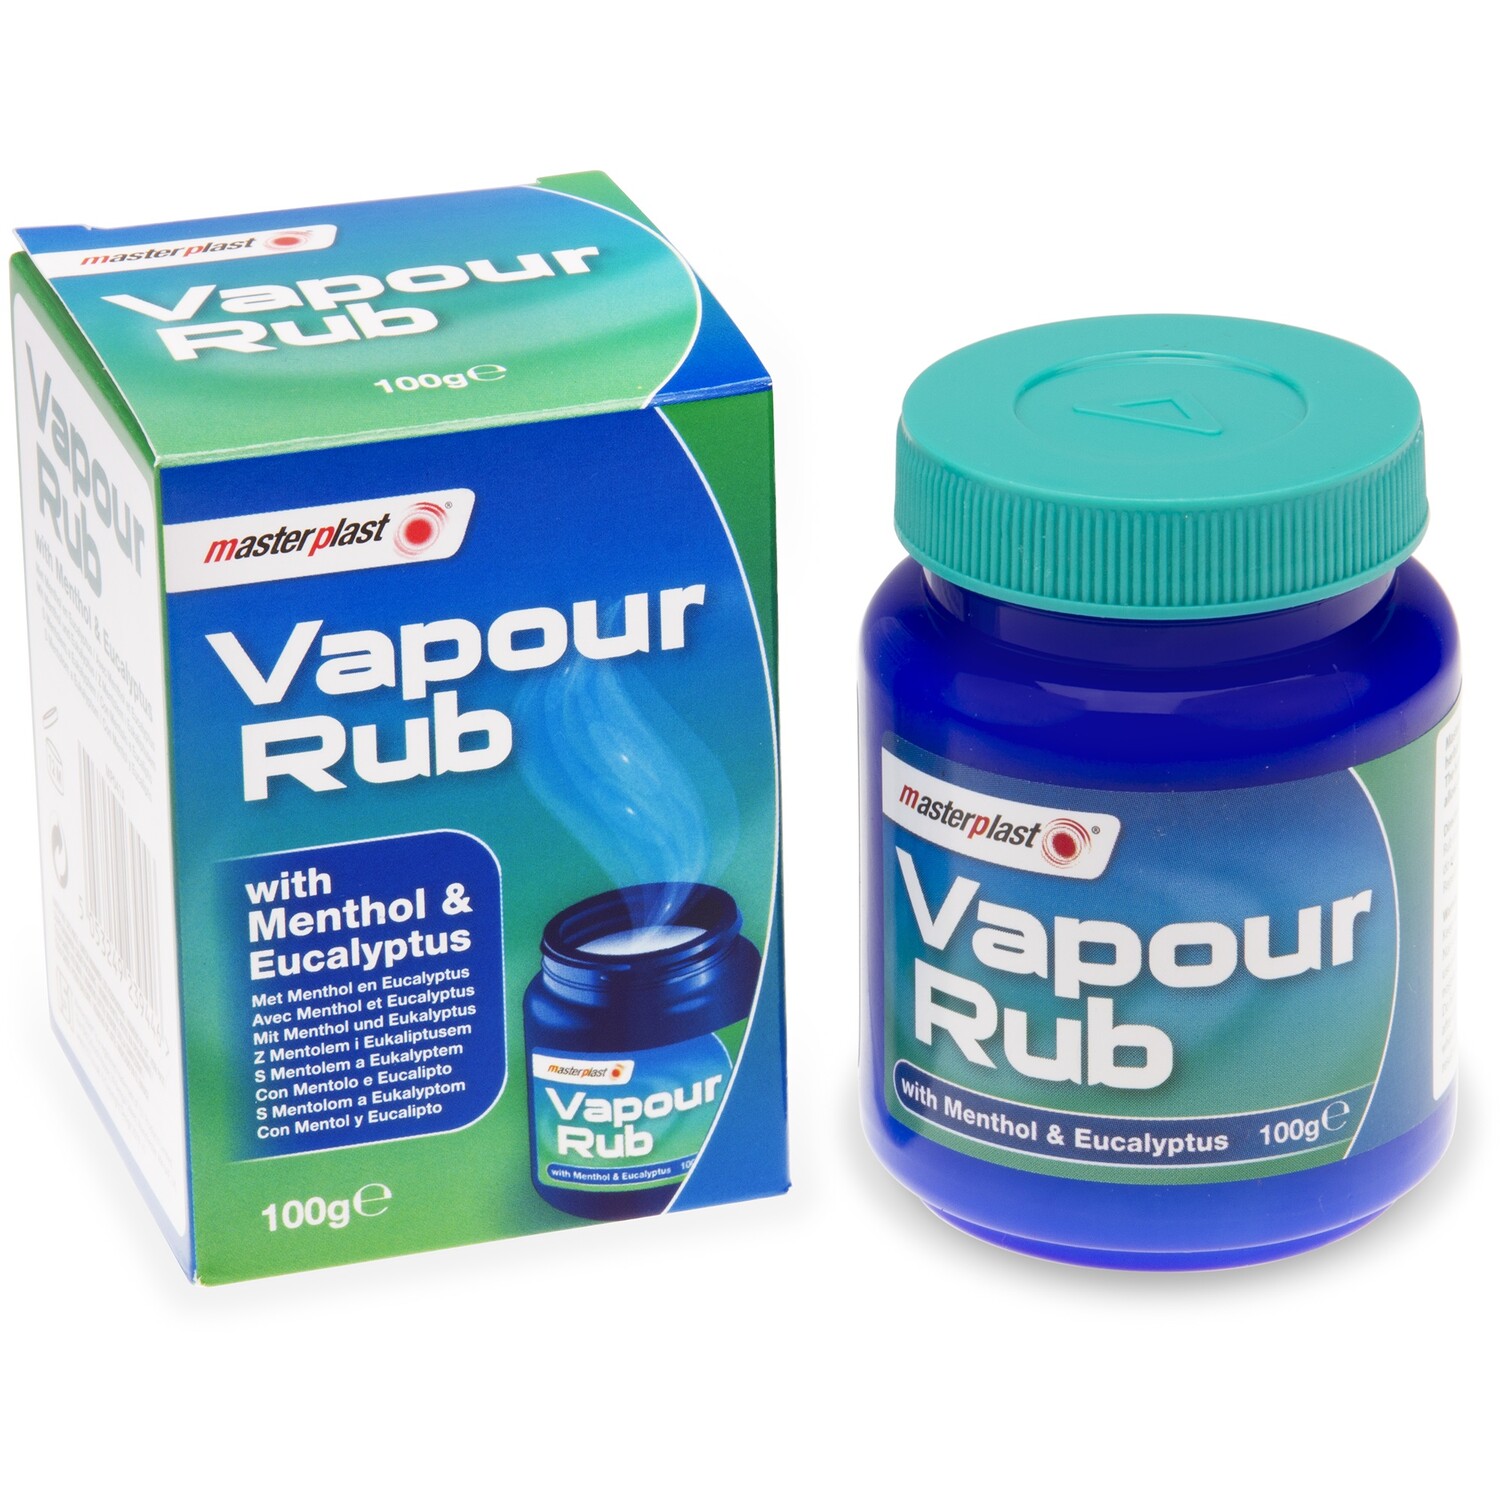 Vapour Rub Image